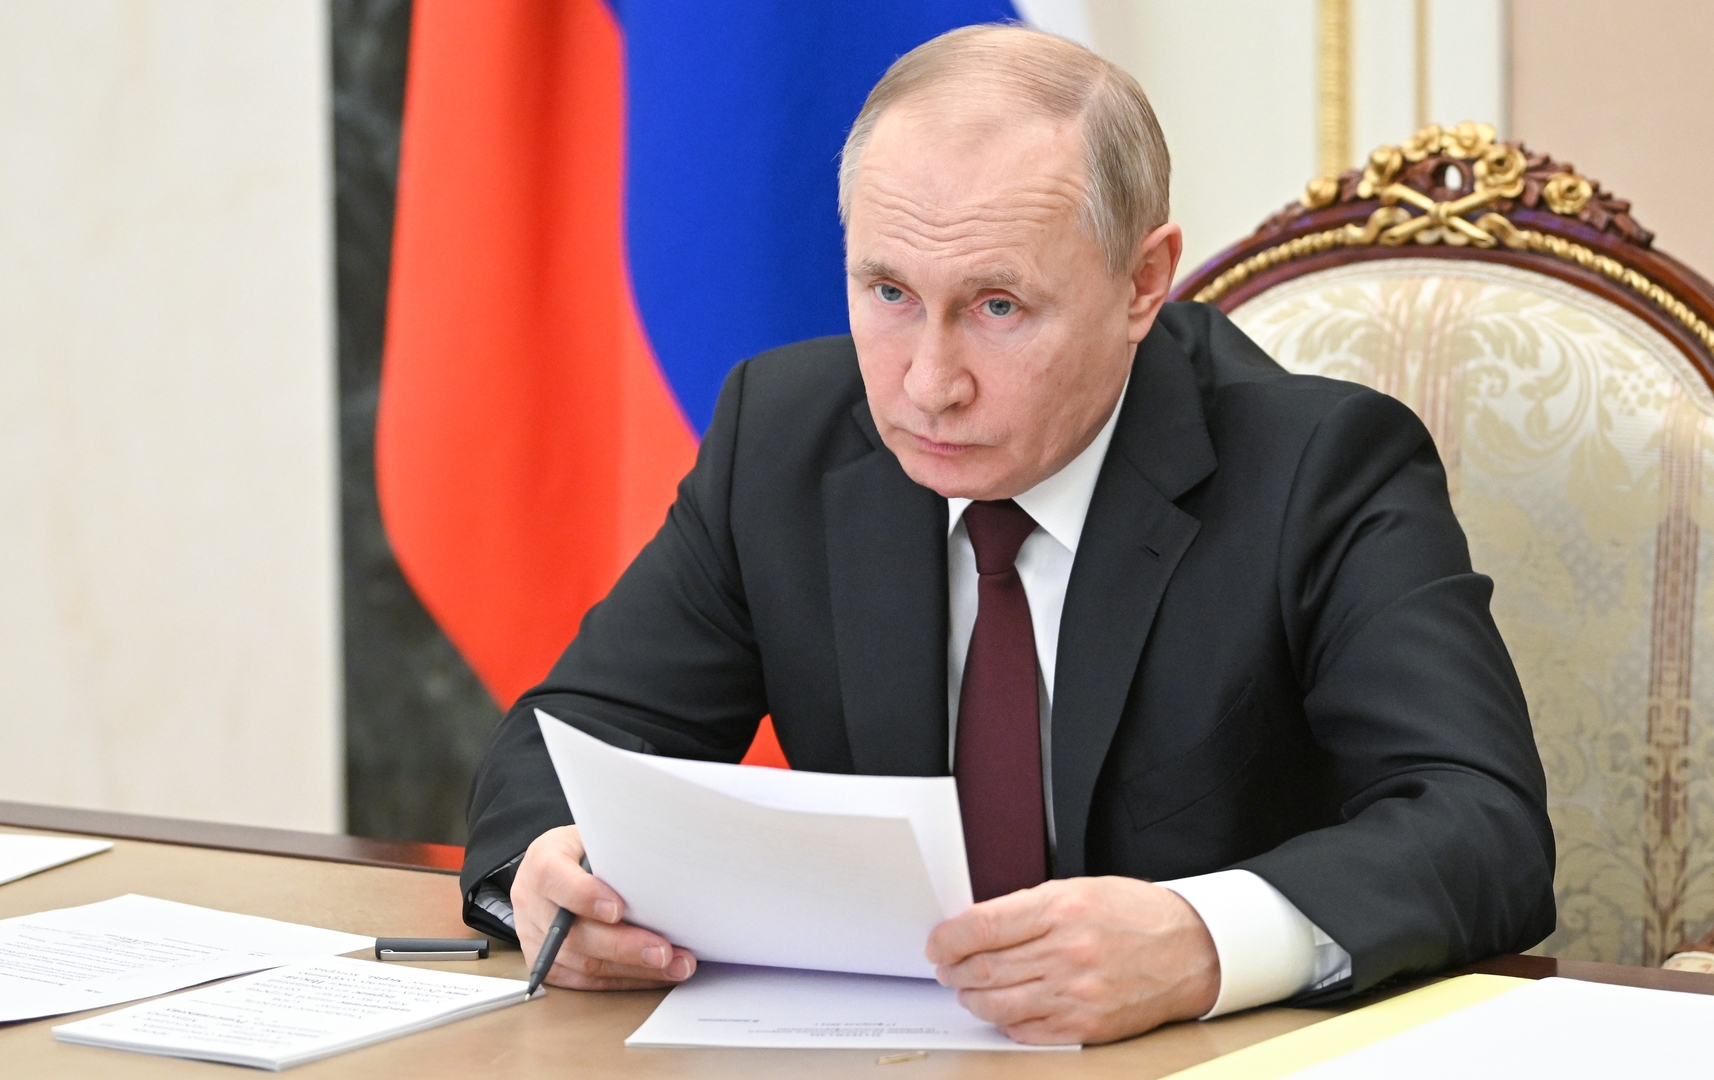 بوتين: ادعاءات الغرب حول سعينا لإعادة الإمبراطورية الروسية لا تتطابق مع الحقيقة